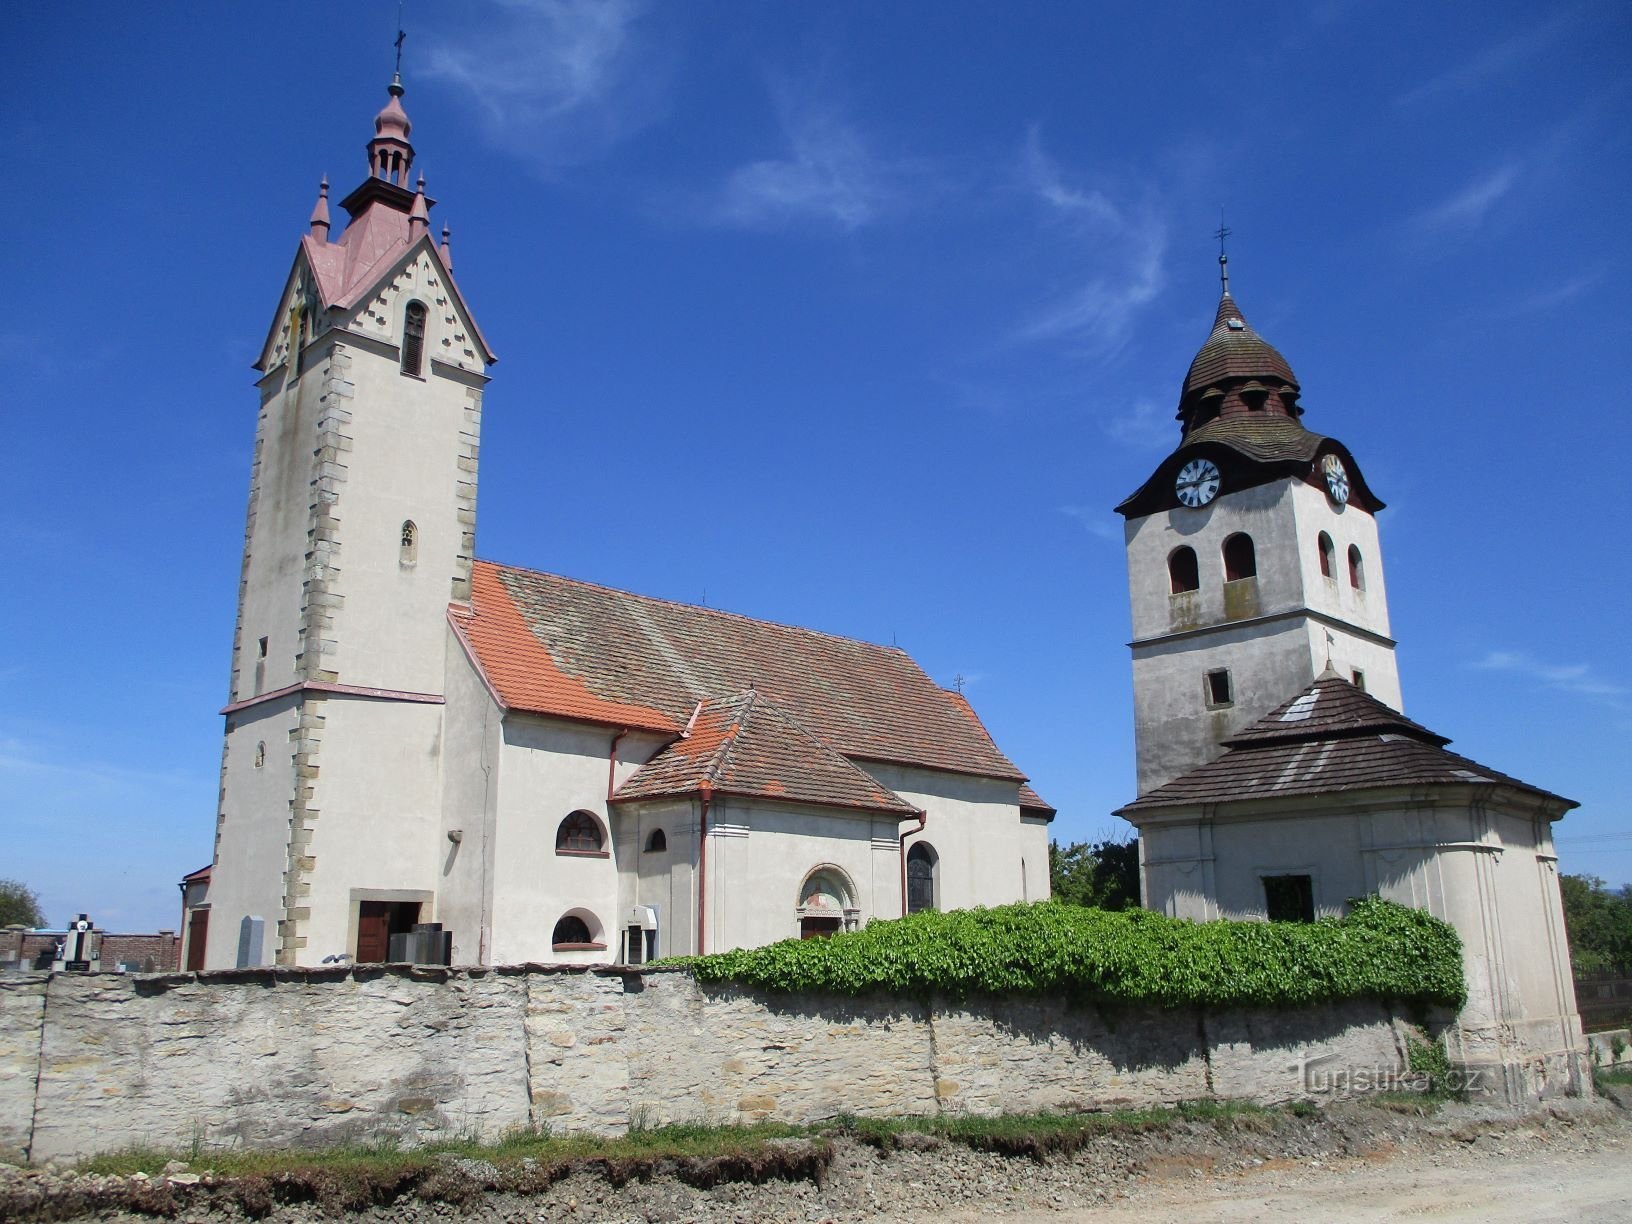 Εκκλησία του Αγ. Ο Νικόλαος με το καμπαναριό (Bohuslavice nad Metují, 18.5.2020/XNUMX/XNUMX)